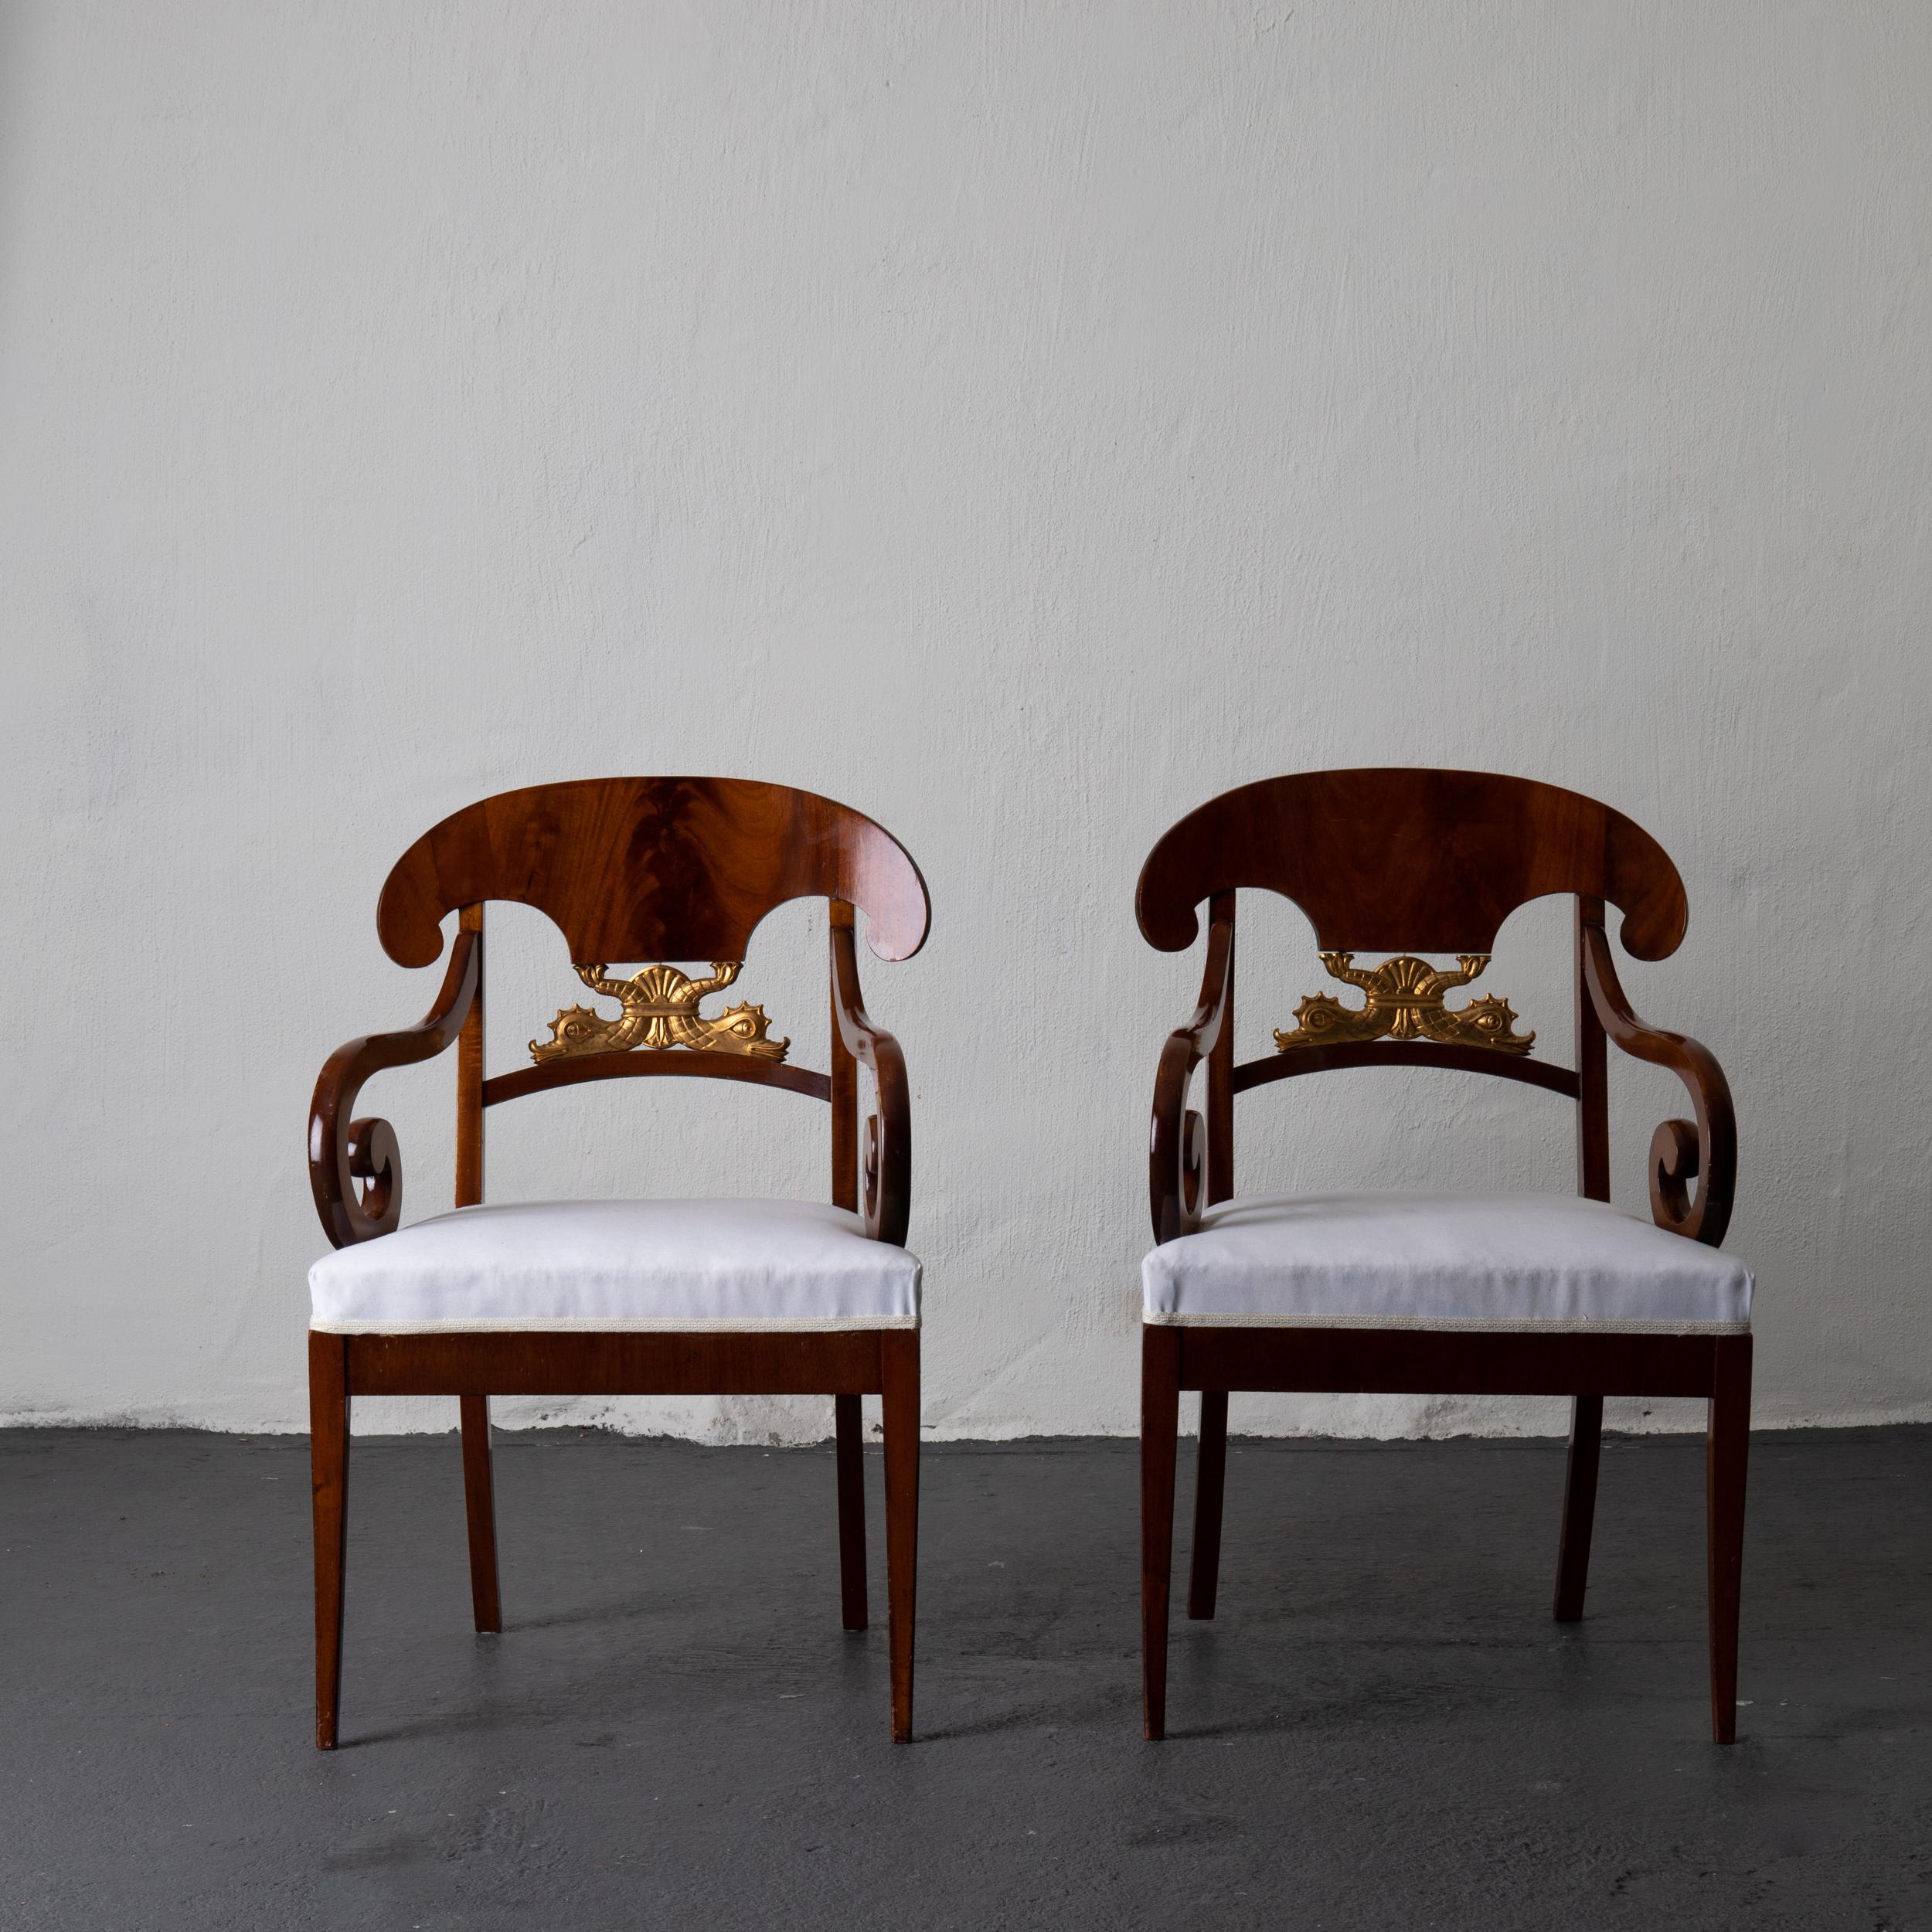 Une paire de fauteuils fabriqués pendant la période Empire / Karl Johan en Suède 1810-1830. Plaqué dans un bel acajou brun foncé et décoré de deux dauphins dorés. Pattes arrière en sabre et pattes avant droites. Tapissé d'un tissu en coton